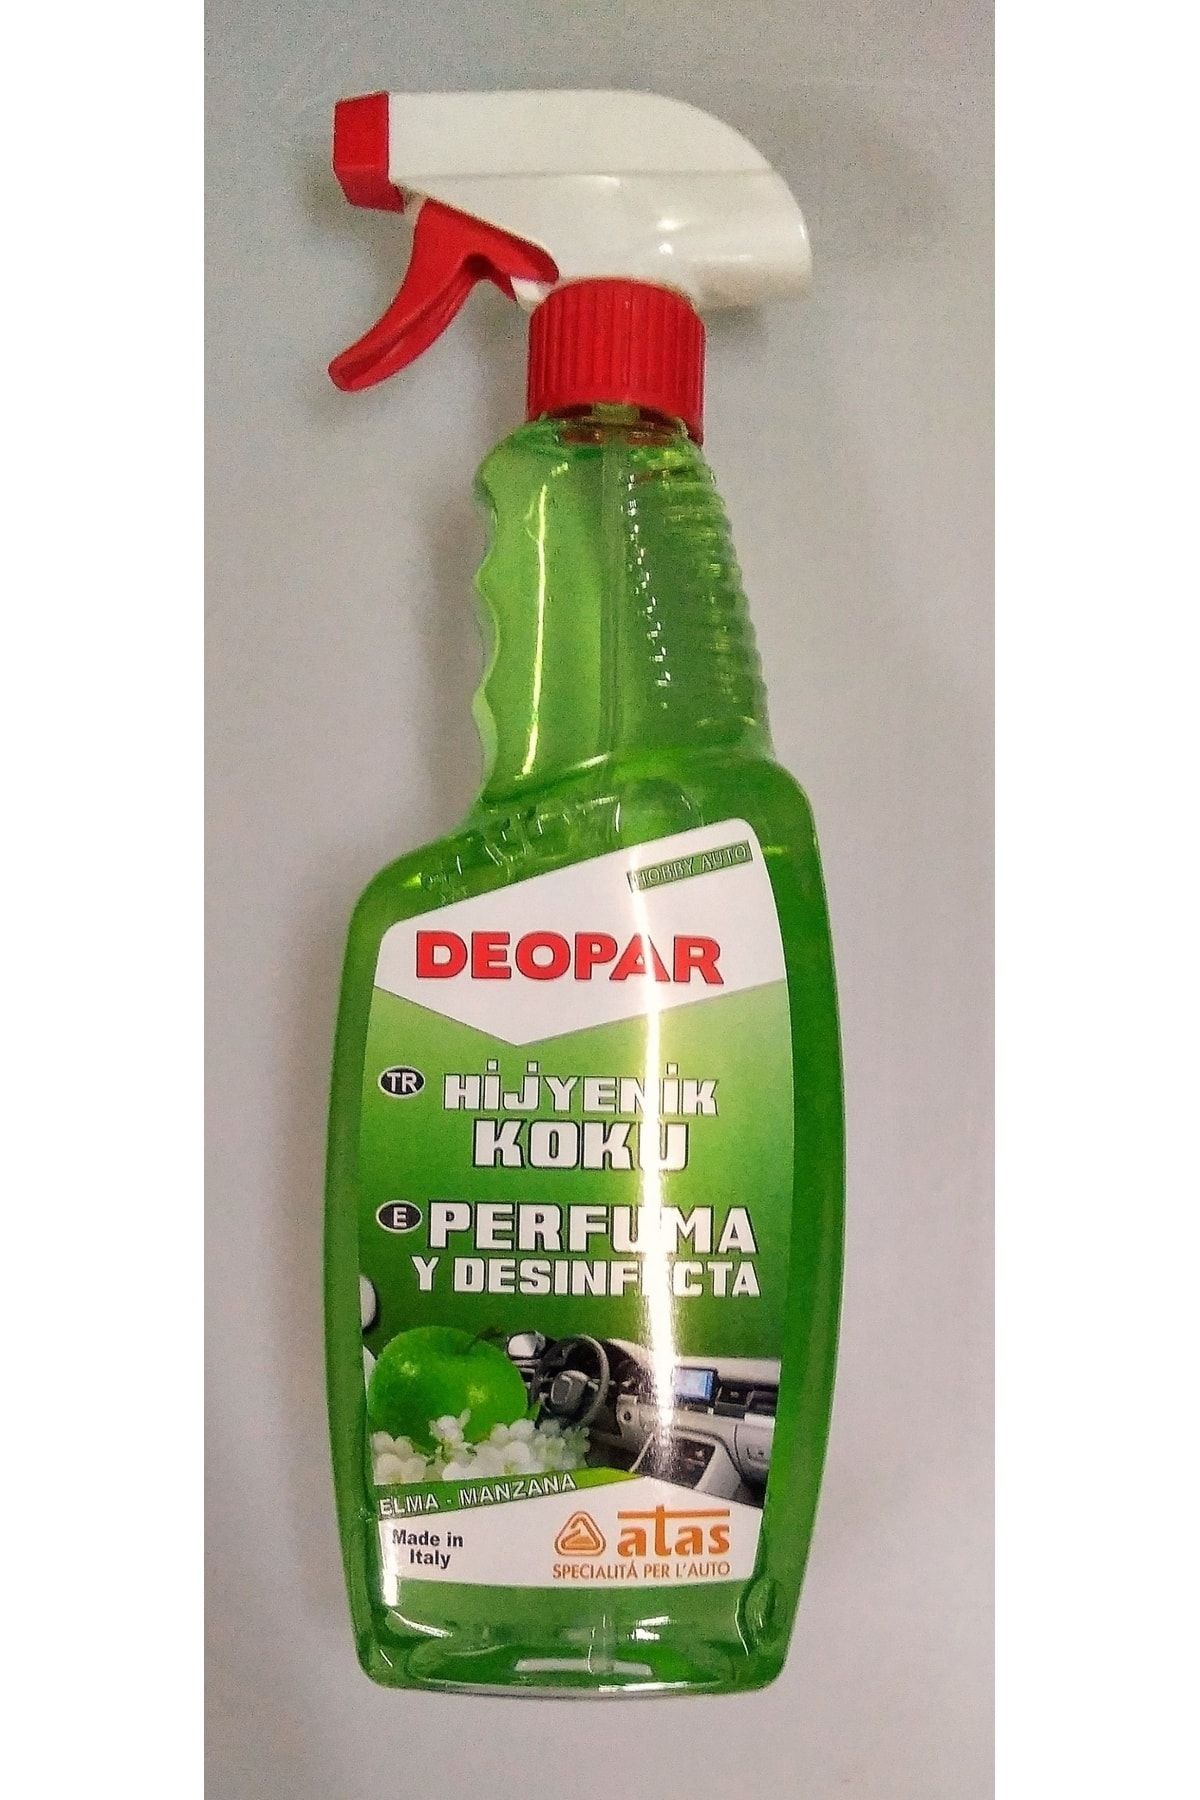 İtalyan ATAS Deopar Hijyenik Parfüm Yeşil Elma 750ml Araç Içinde Ve Her Yüzeyde Hijyenik Dezenfektan Parfüm